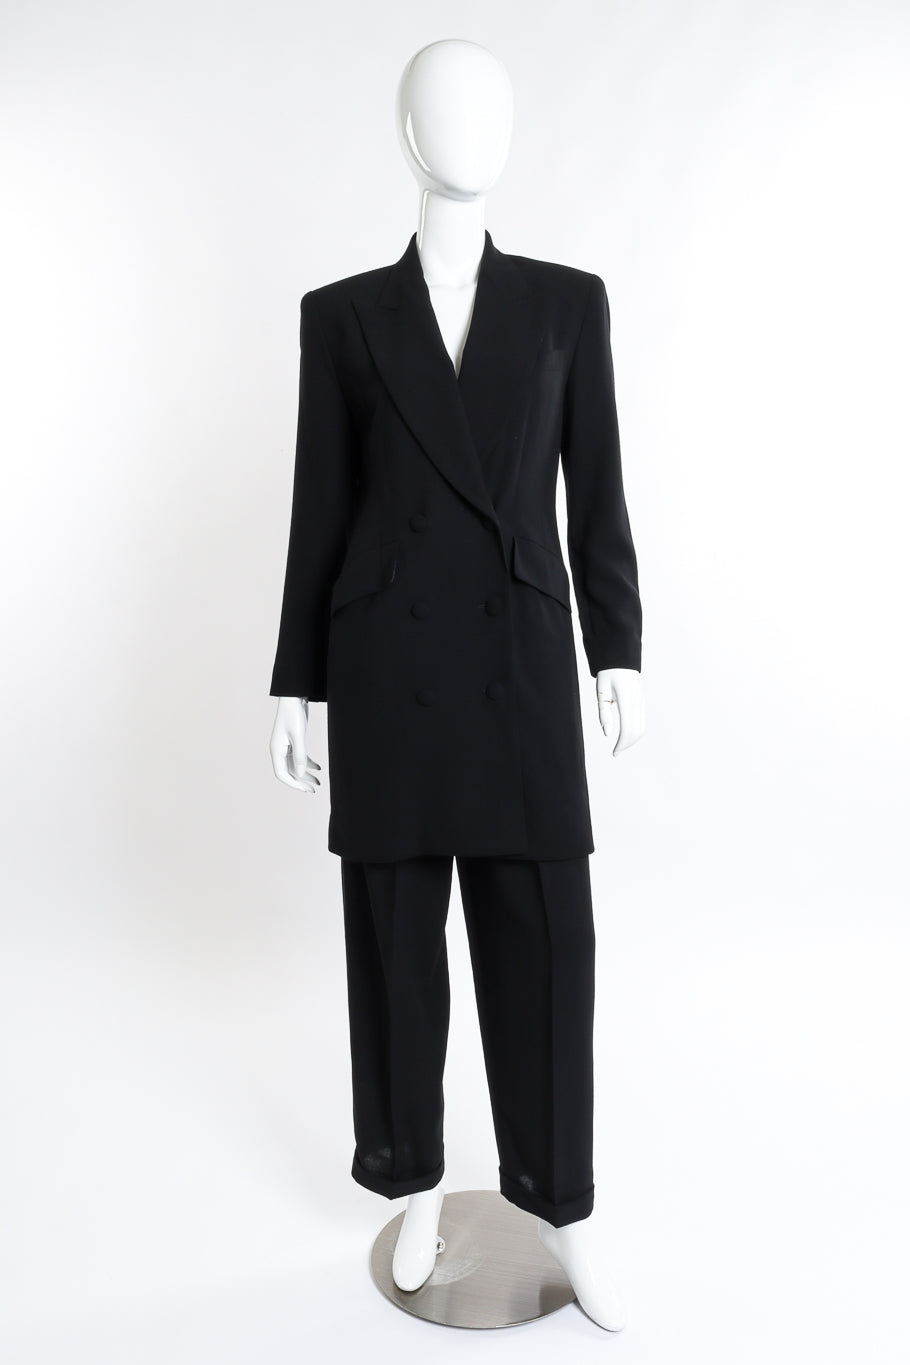 Vintage DKNY Longline Blazer and Pant Suit Set front on mannequin @recess la